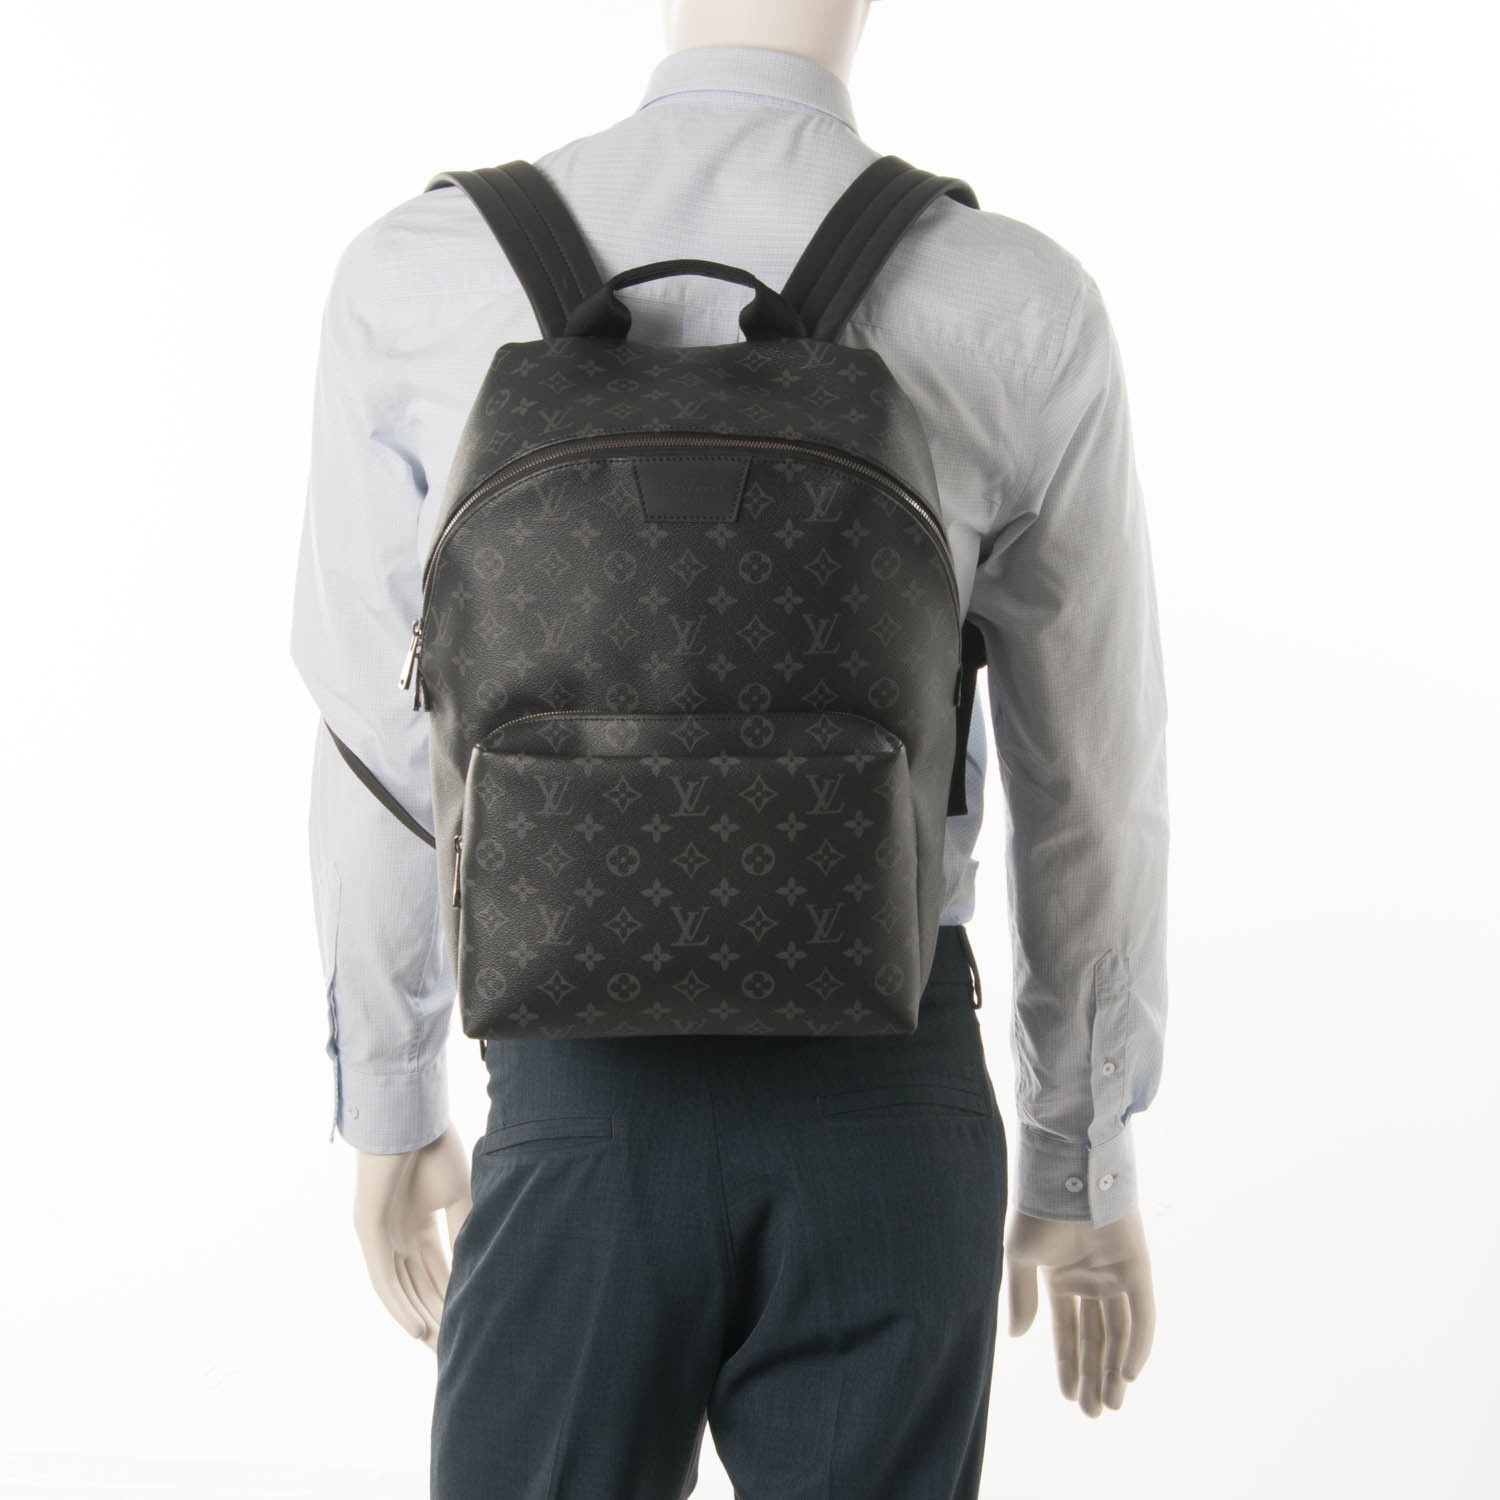 Sacs Louis Vuitton Bum Bag / Sac Ceinture - Vestiaire Collective